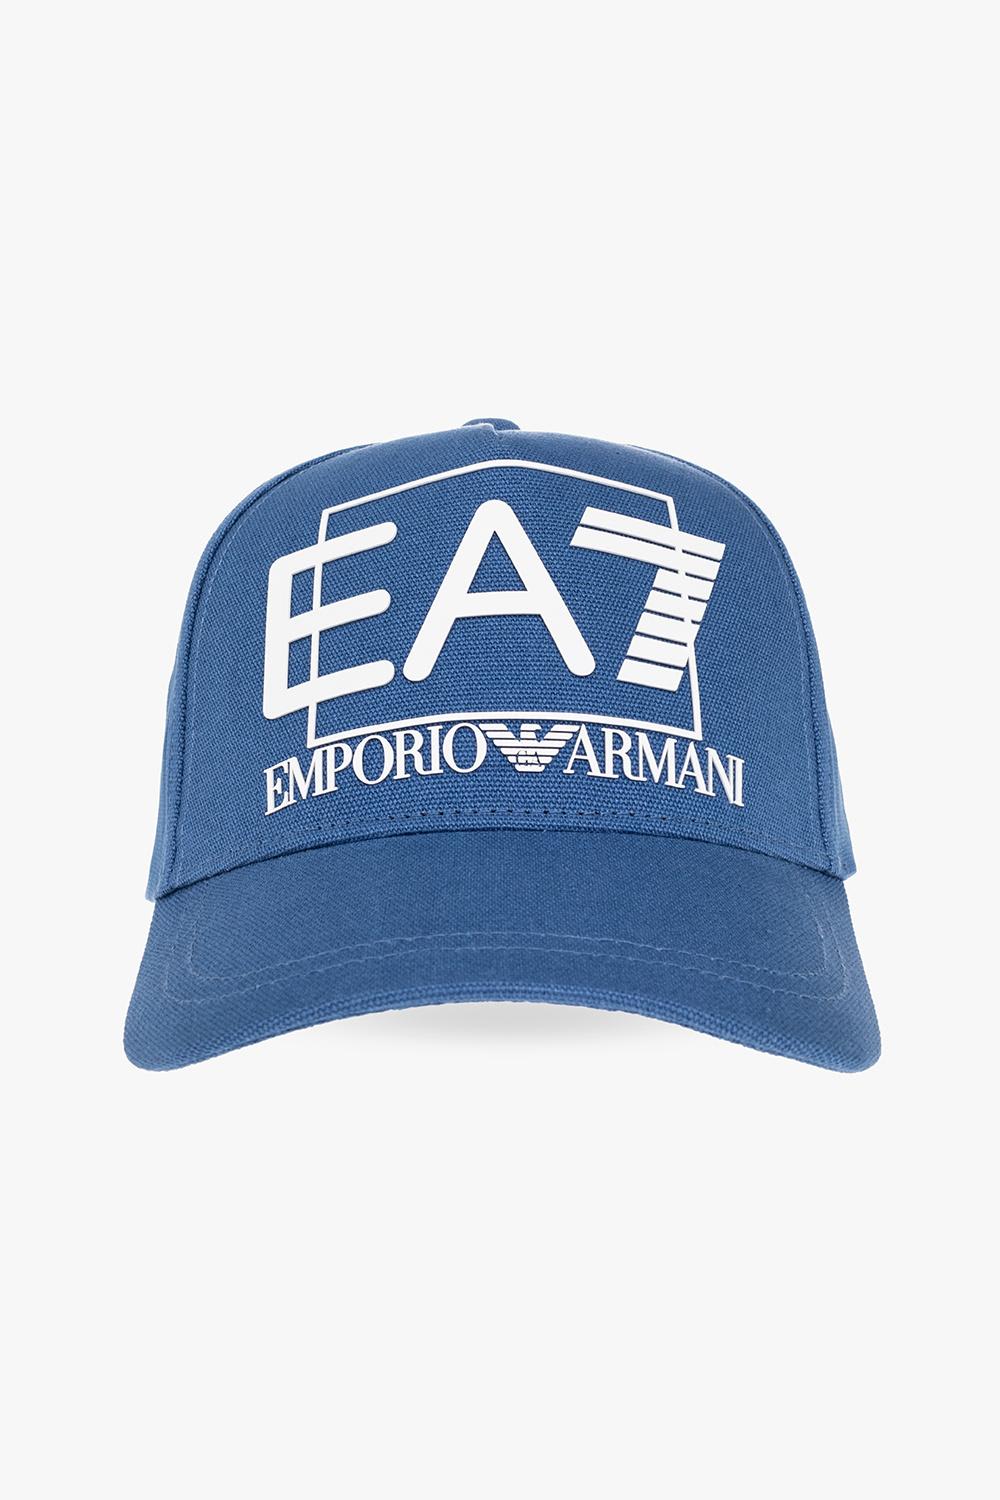 EA7 BASEBALL CAP